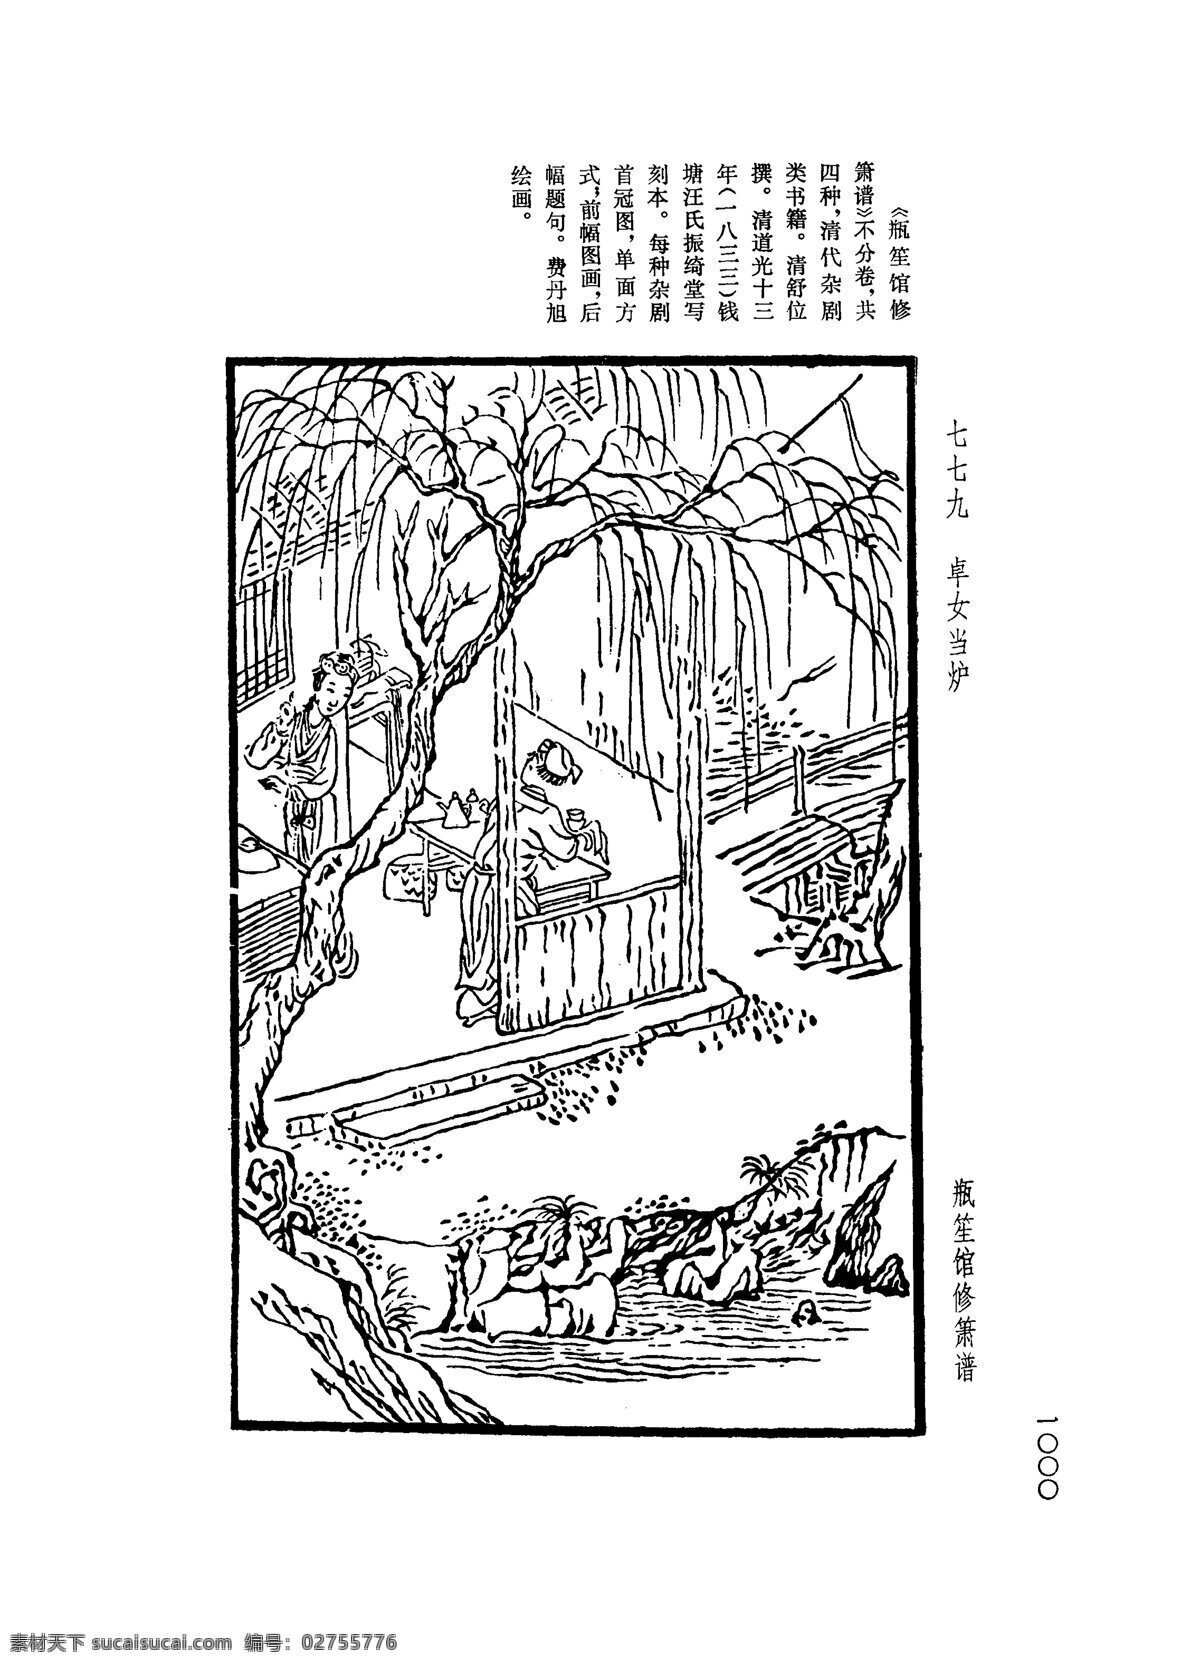 中国 古典文学 版画 选集 上 下册1028 设计素材 版画世界 书画美术 白色